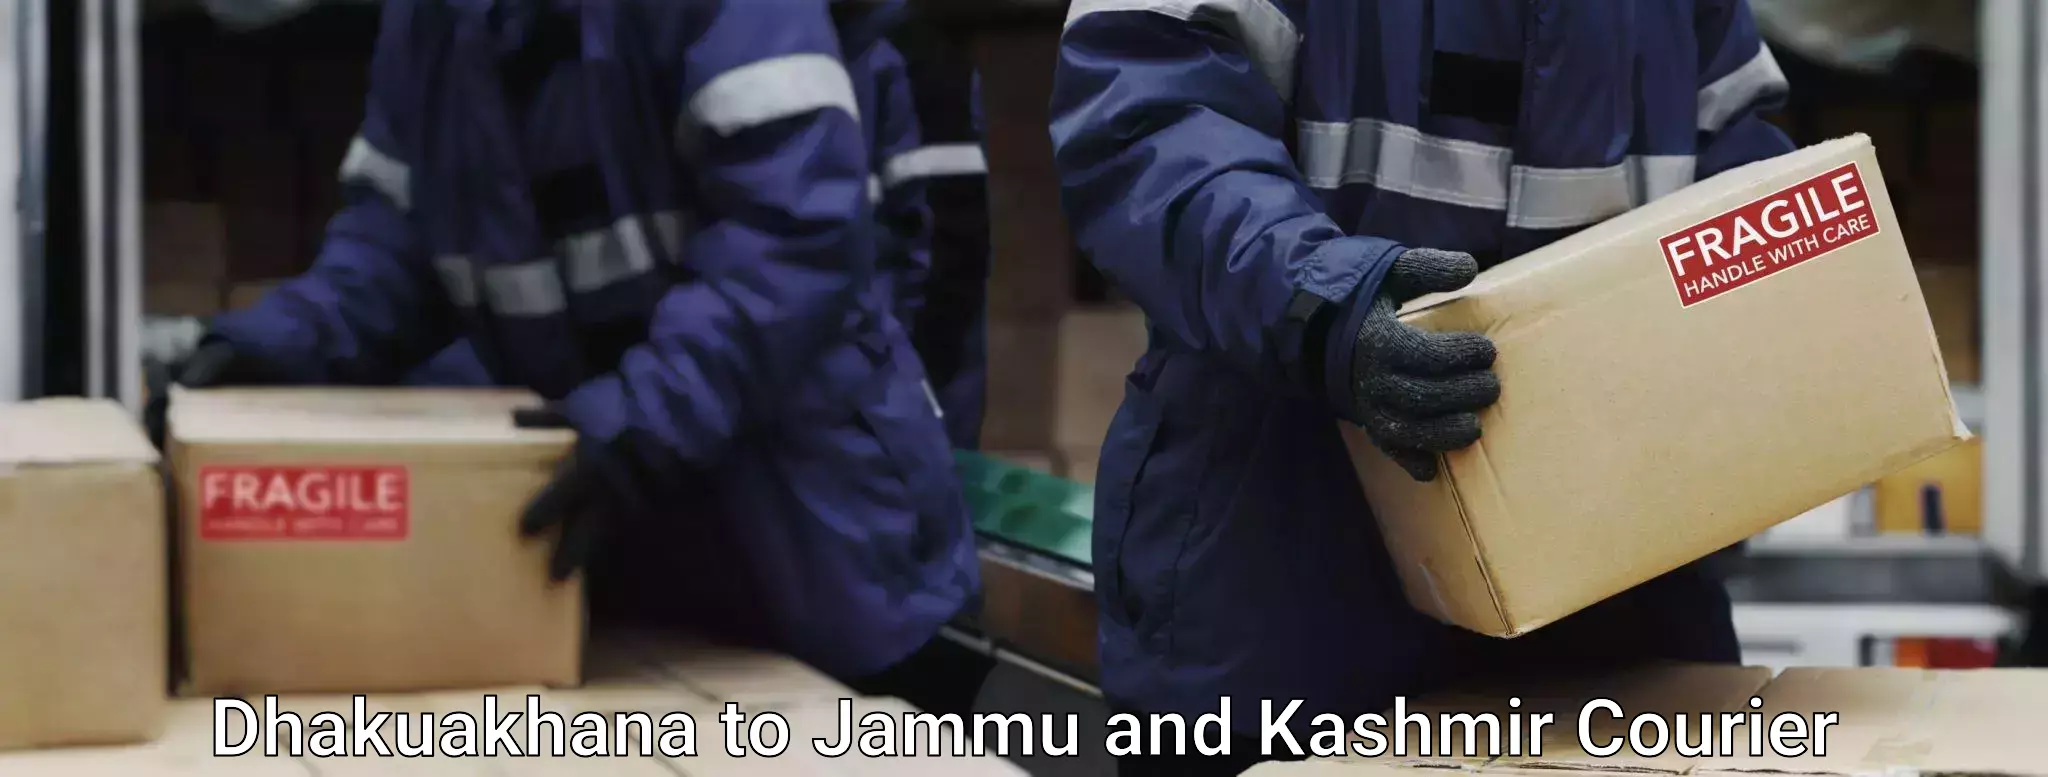 Baggage transport logistics Dhakuakhana to Jammu and Kashmir